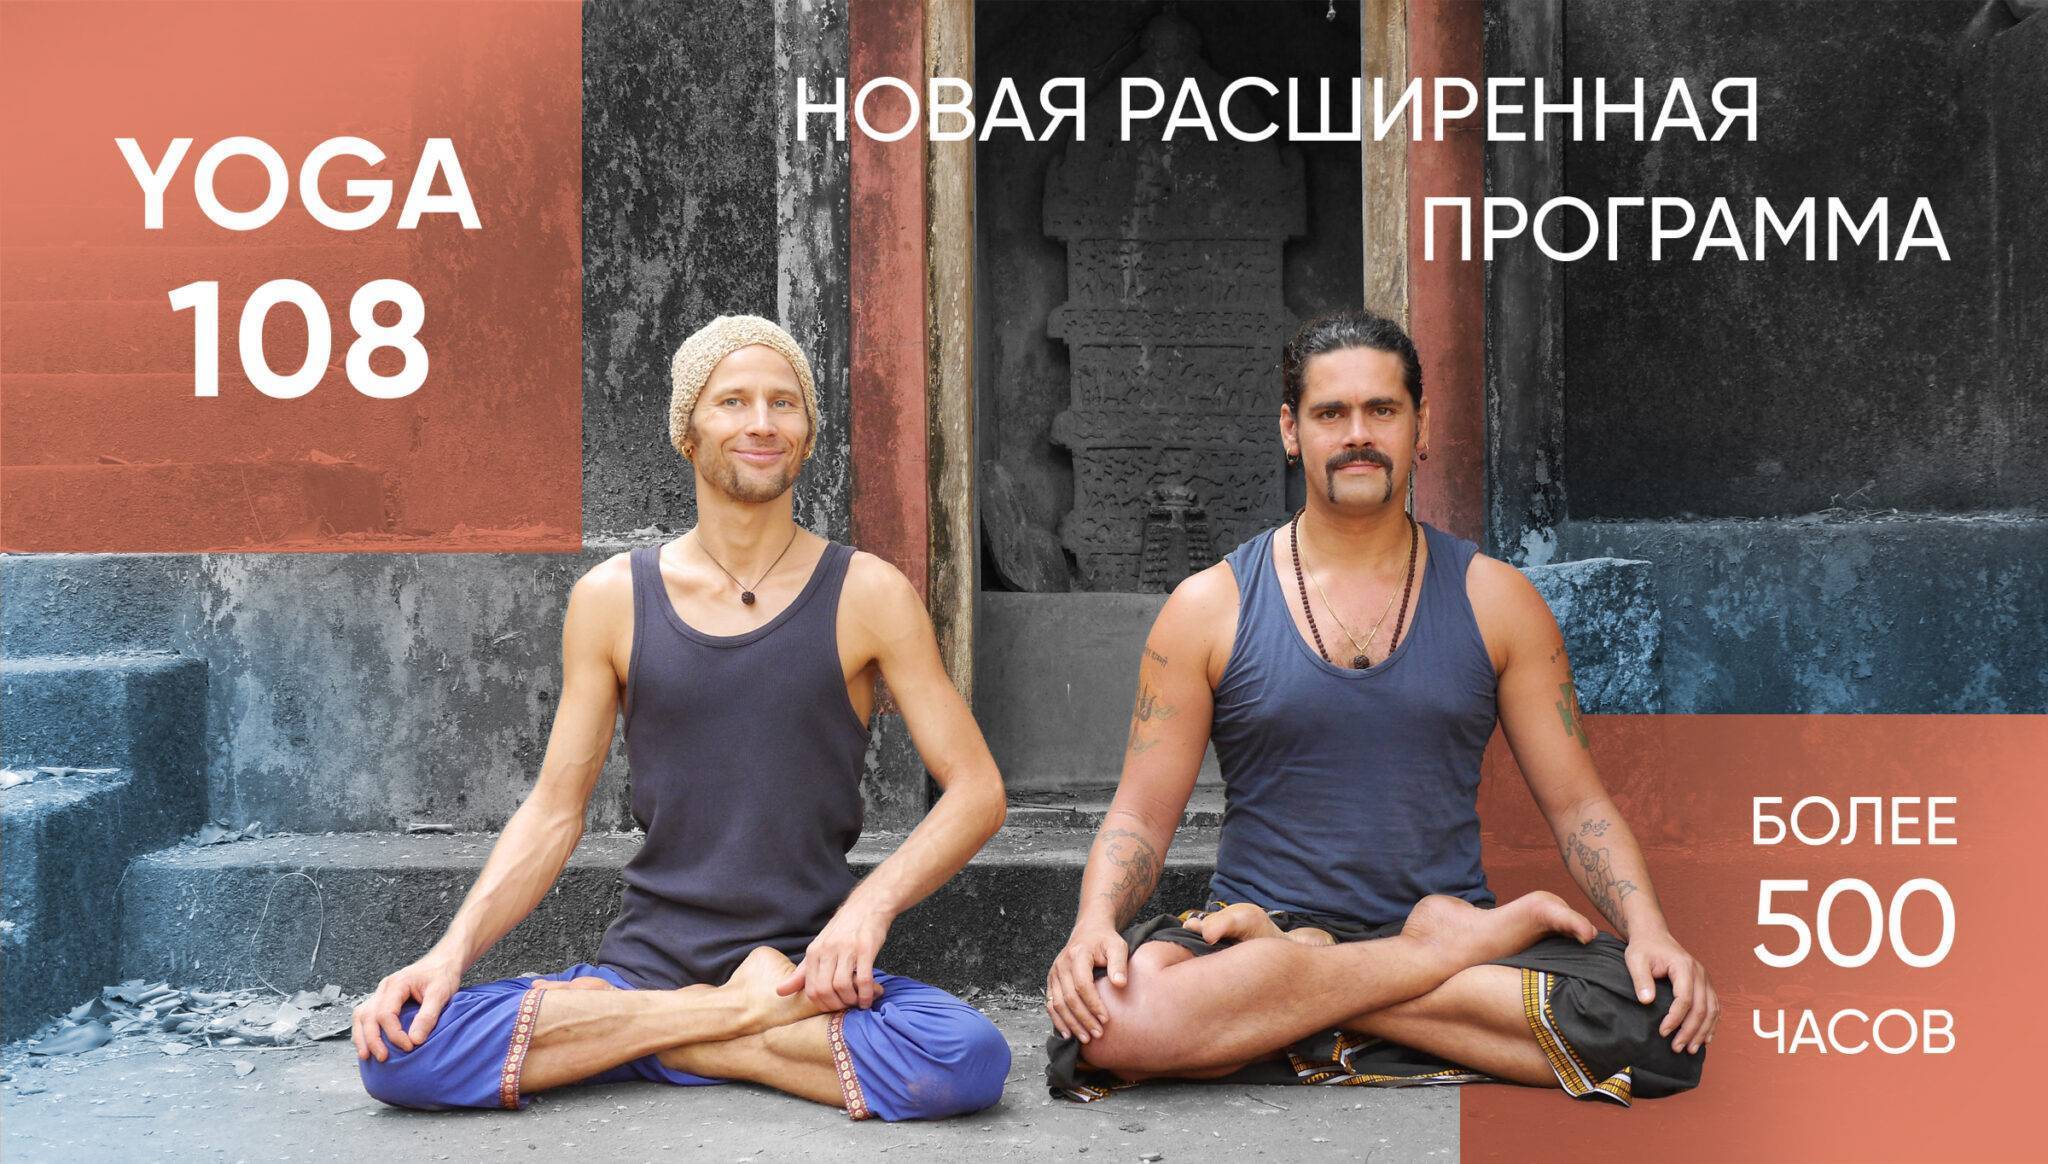 Ответы на вопросы об обучении в школе инструкторов йоги | федерация йоги россии – федерация йоги россии